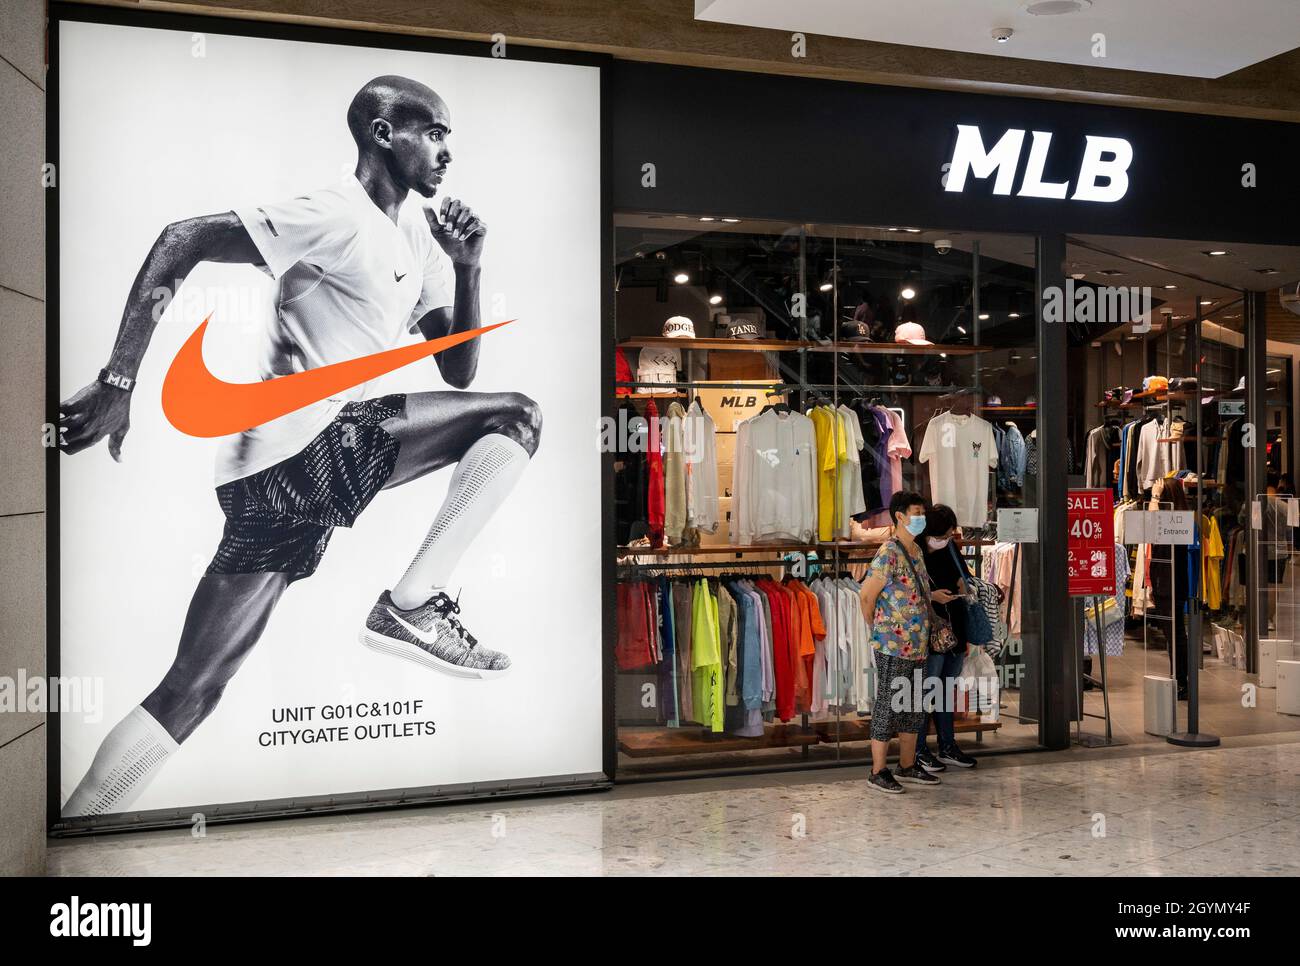 La marca de ropa deportiva multinacional americana Nike y la organización profesional de las tiendas de las Grandes Ligas de Béisbol (MLB) en Hong Kong Fotografía de stock - Alamy